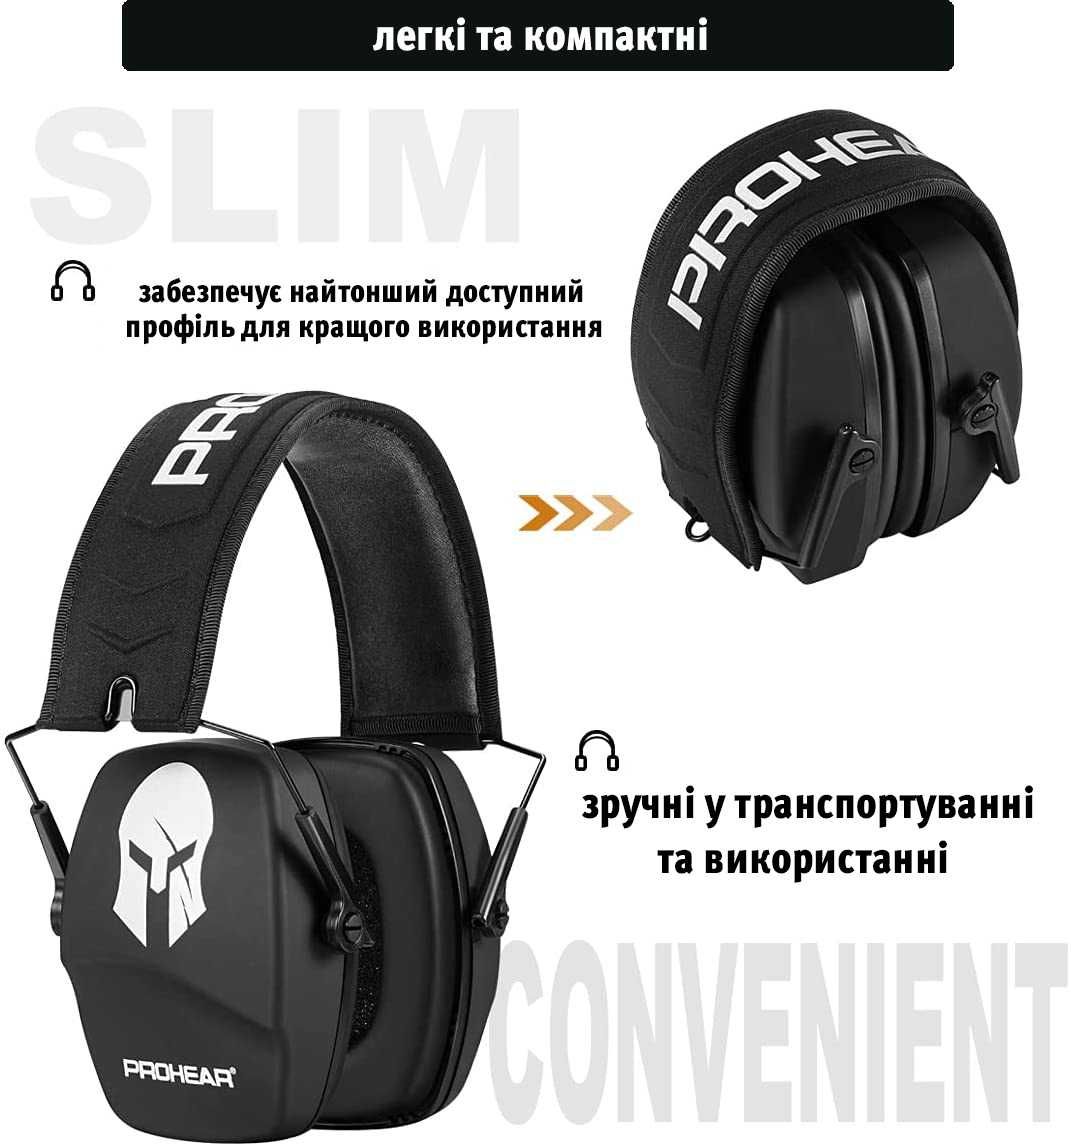 Тактичні шумопоглинаючі навушники Zohan PROHEAD (-26db)!